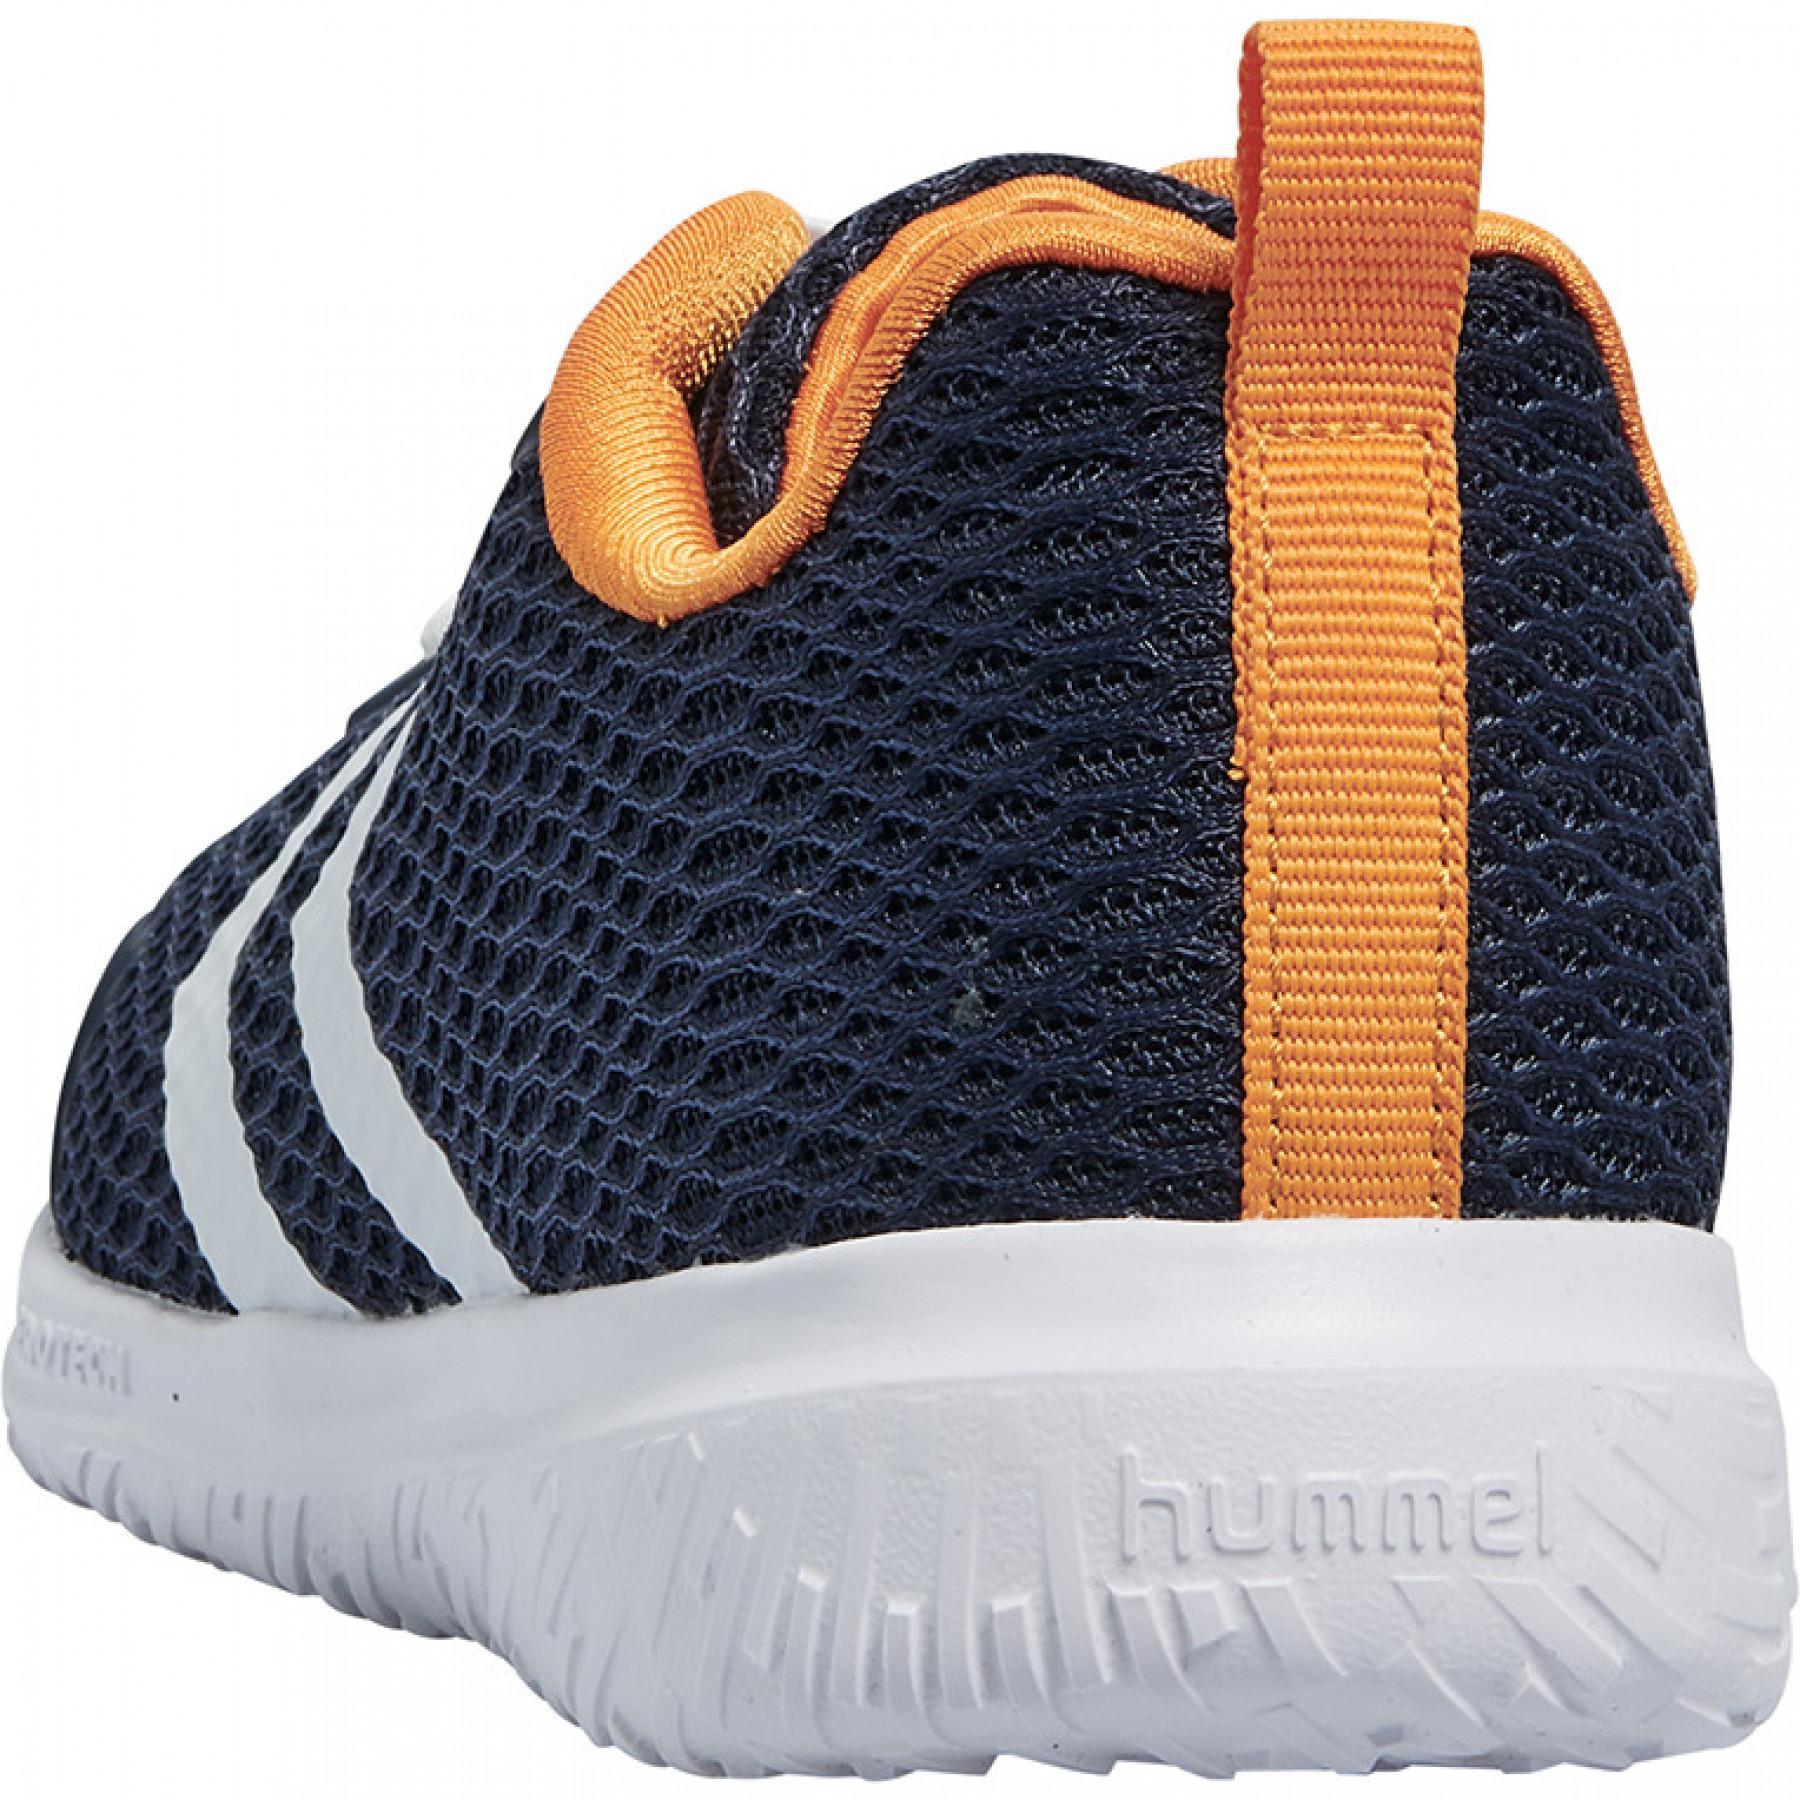 Children's sneakers Hummel actus bts